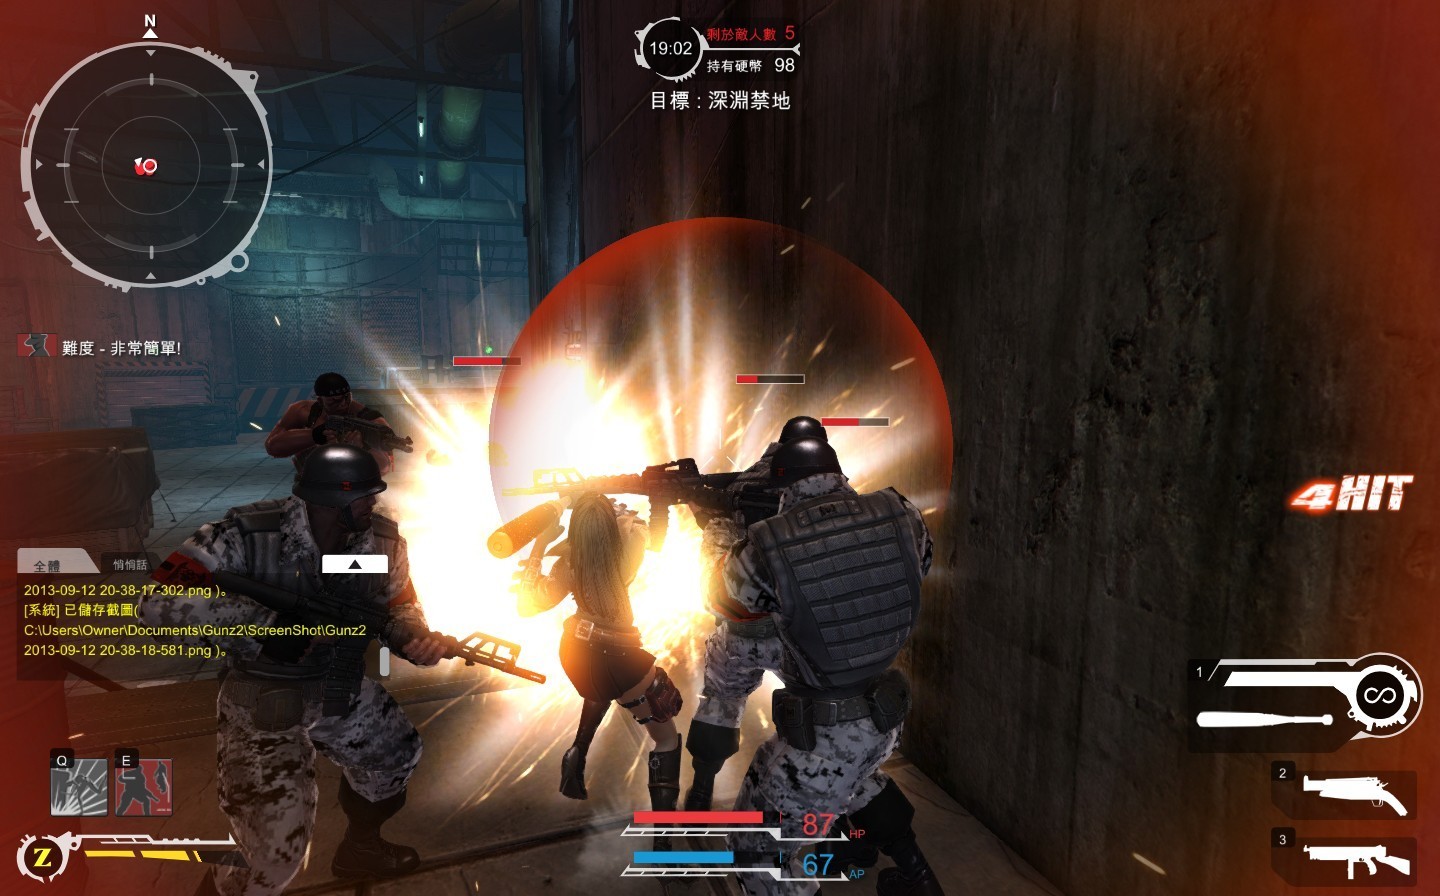 「鋼鐵棒子」擁有不錯攻擊能力，玩家可運用打帶跑戰術，對敵人造成重大傷害！